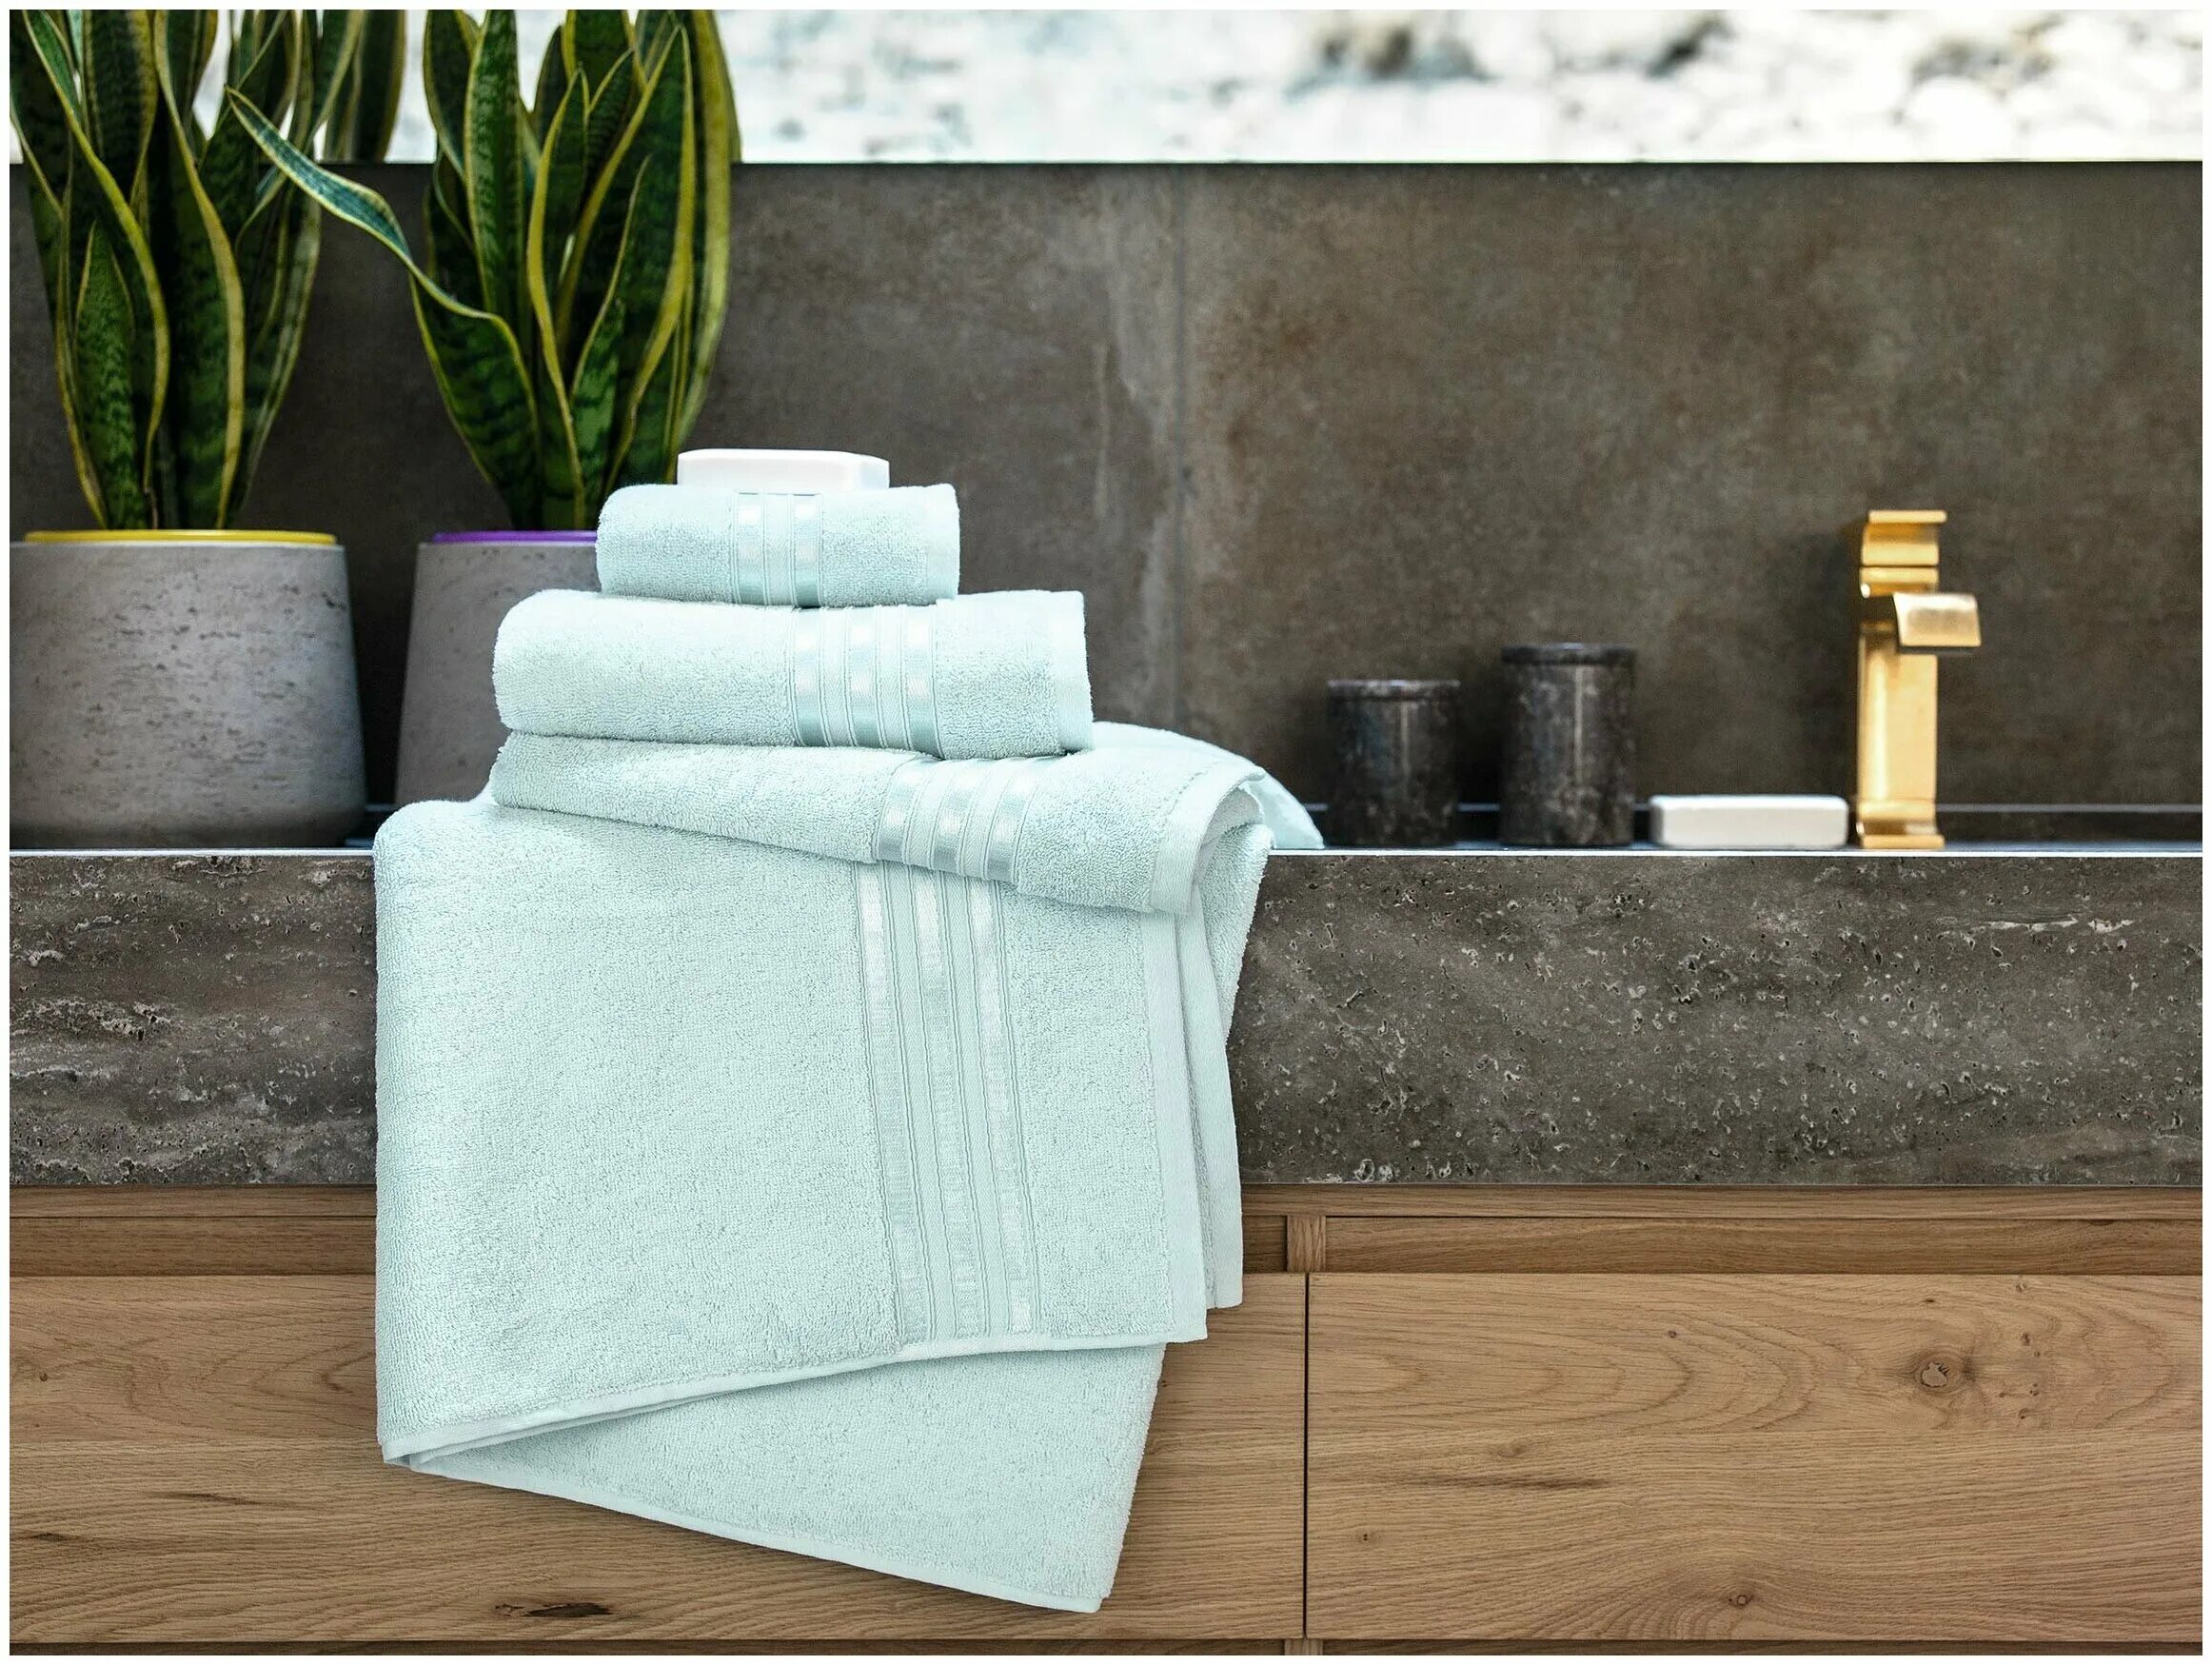 Полотенце раковина. Полотенца в ванной. Красивые полотенца для ванной. Стопка полотенец. Полотенце в ванной в интерьере.